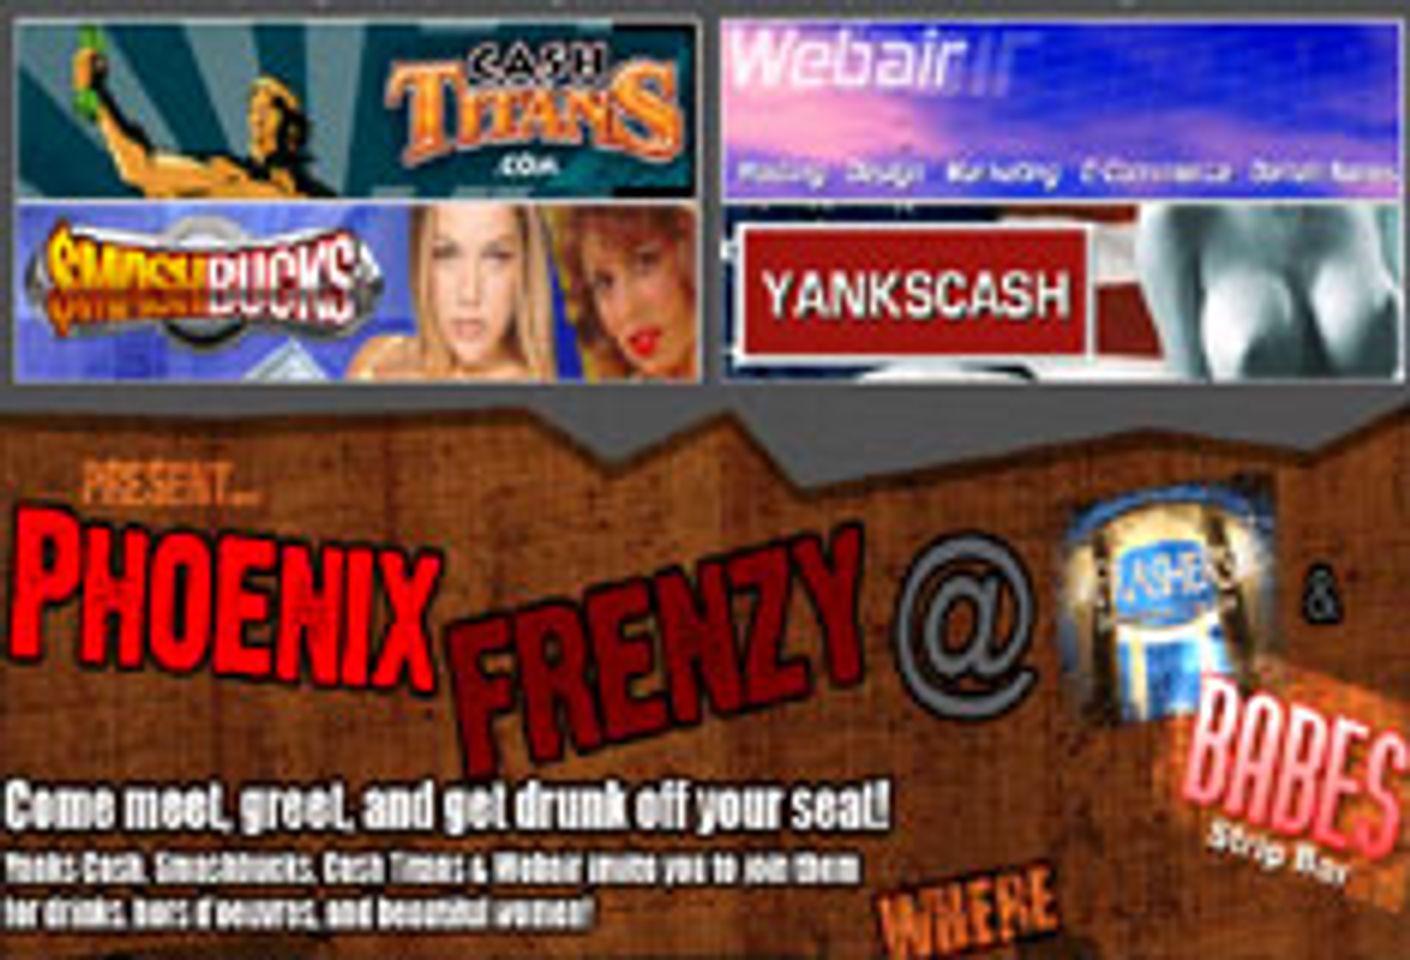 SmashBucks, Yanks Cash, Cash Titans and Webair Announce Phoenix Party